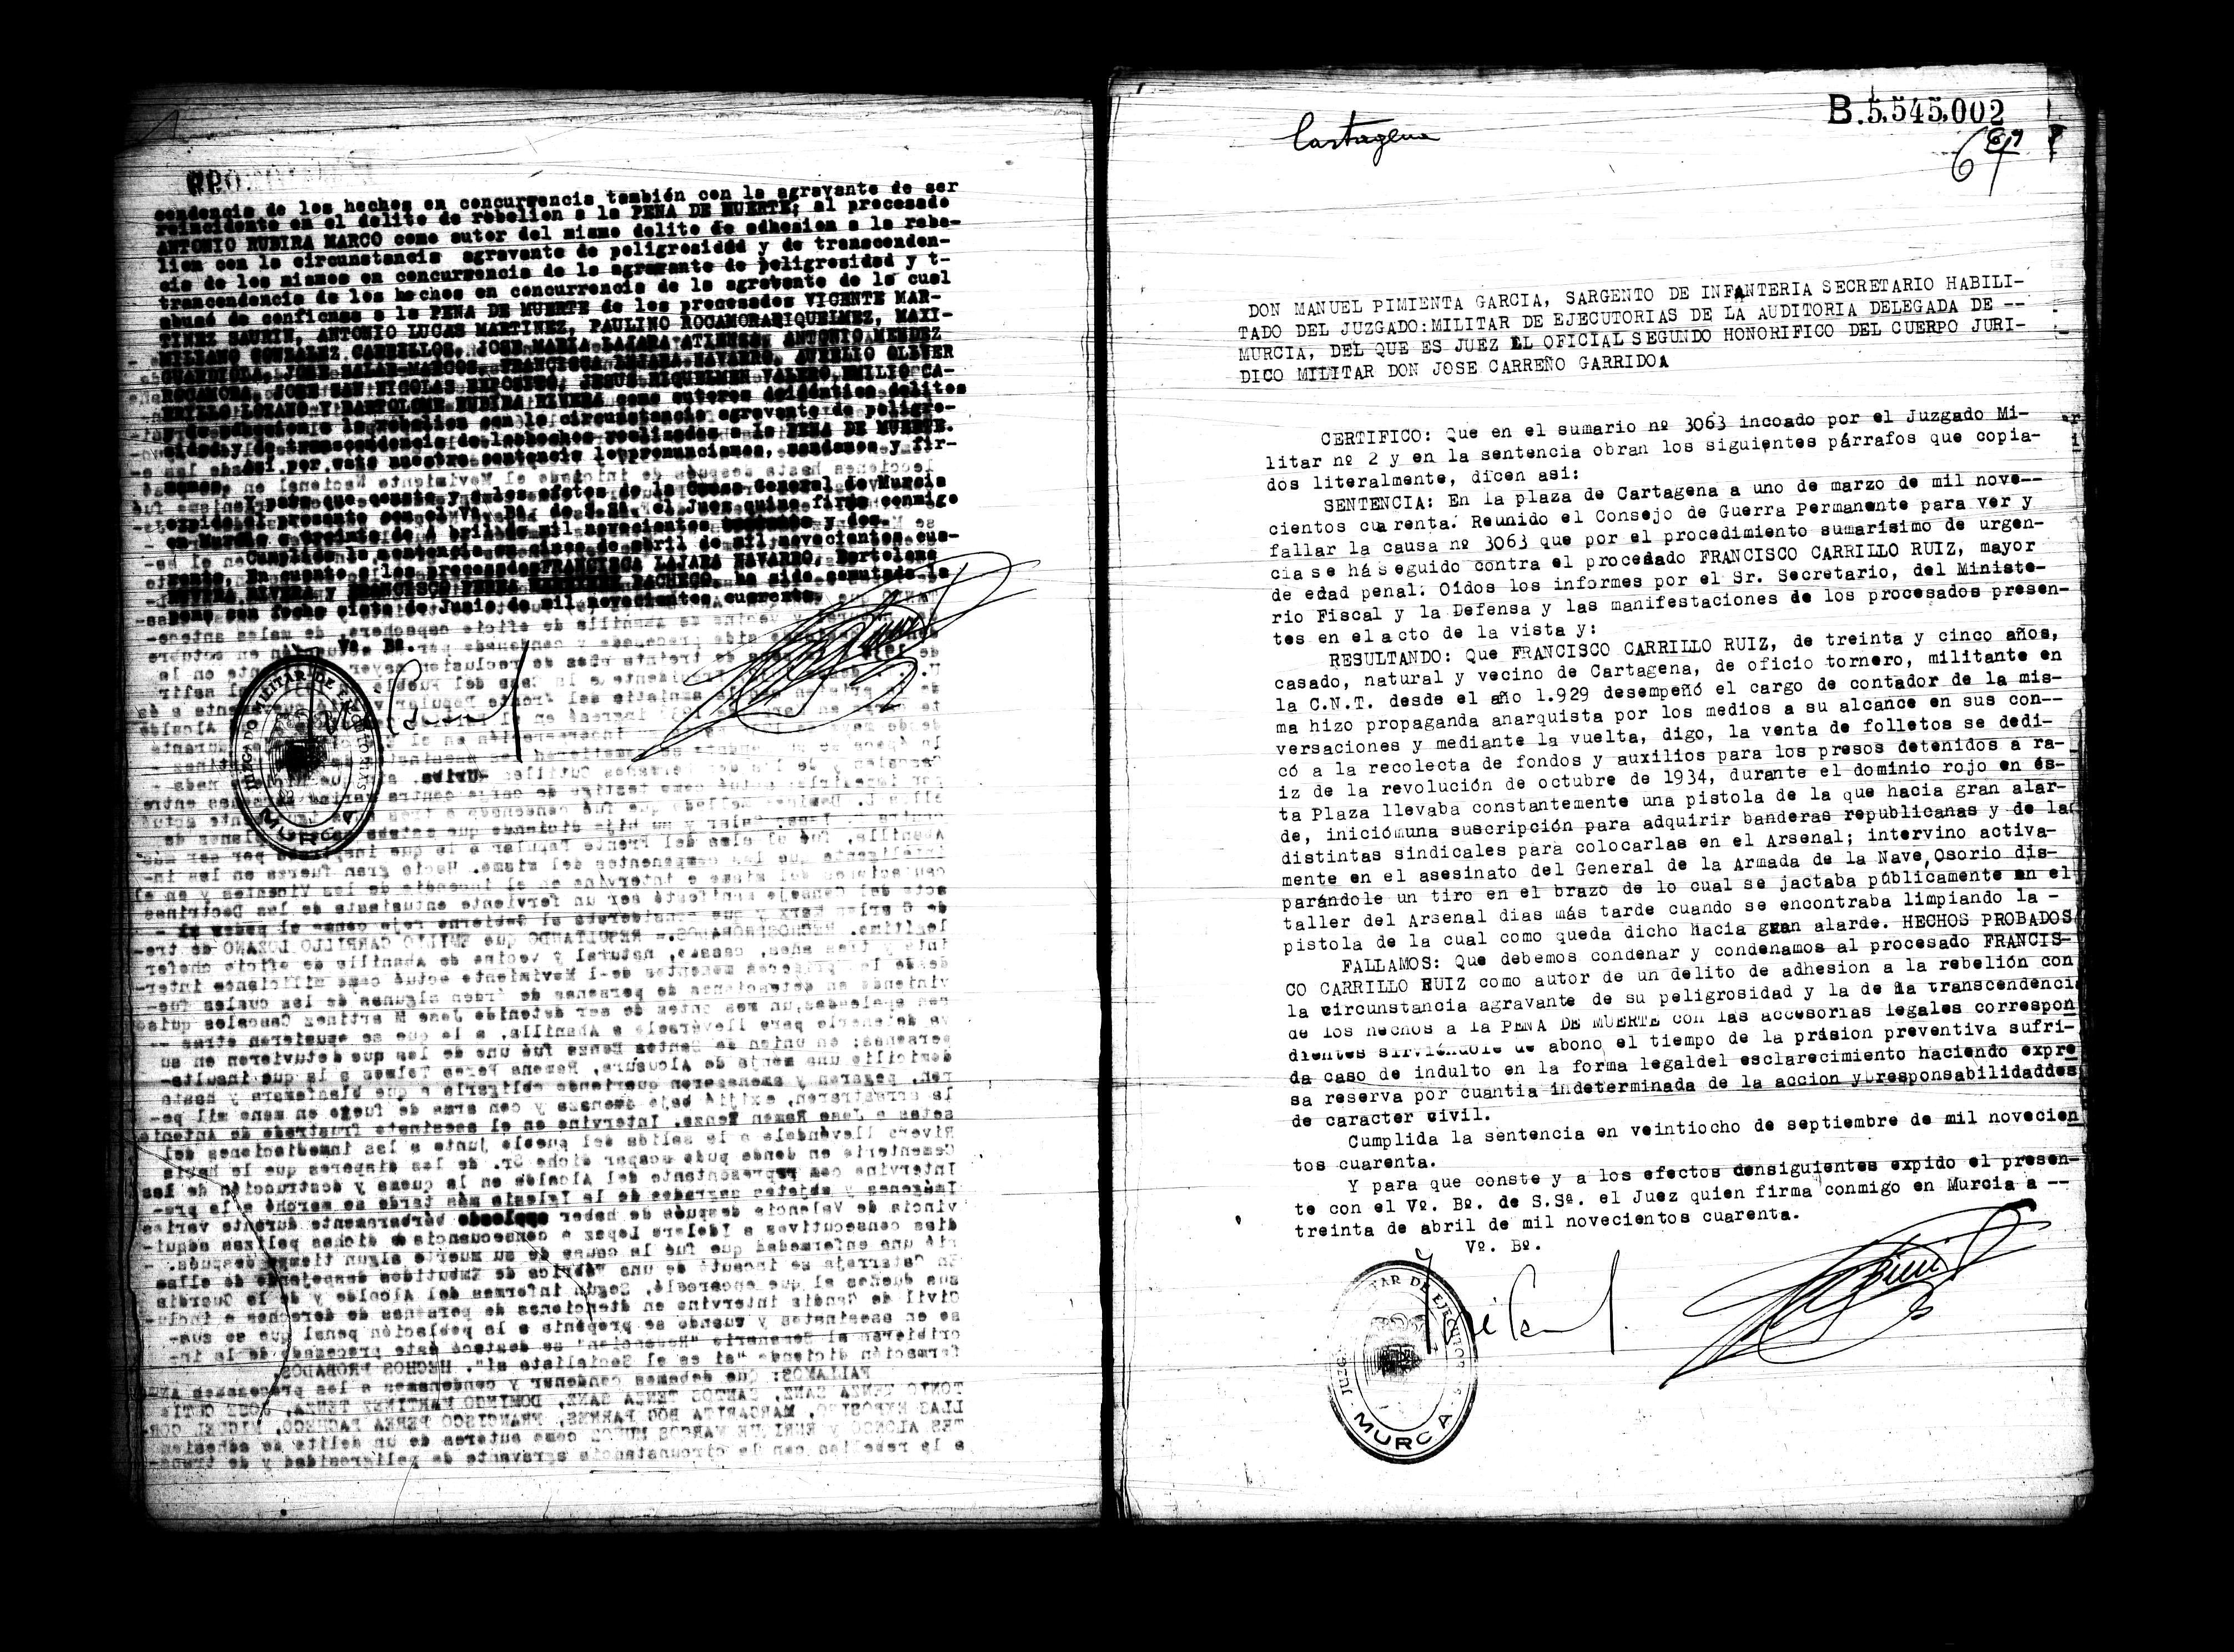 Certificado de la sentencia pronunciada contra Francisco Carrillo Ruiz, causa 3063, el 1 de marzo de 1940 en Cartagena.